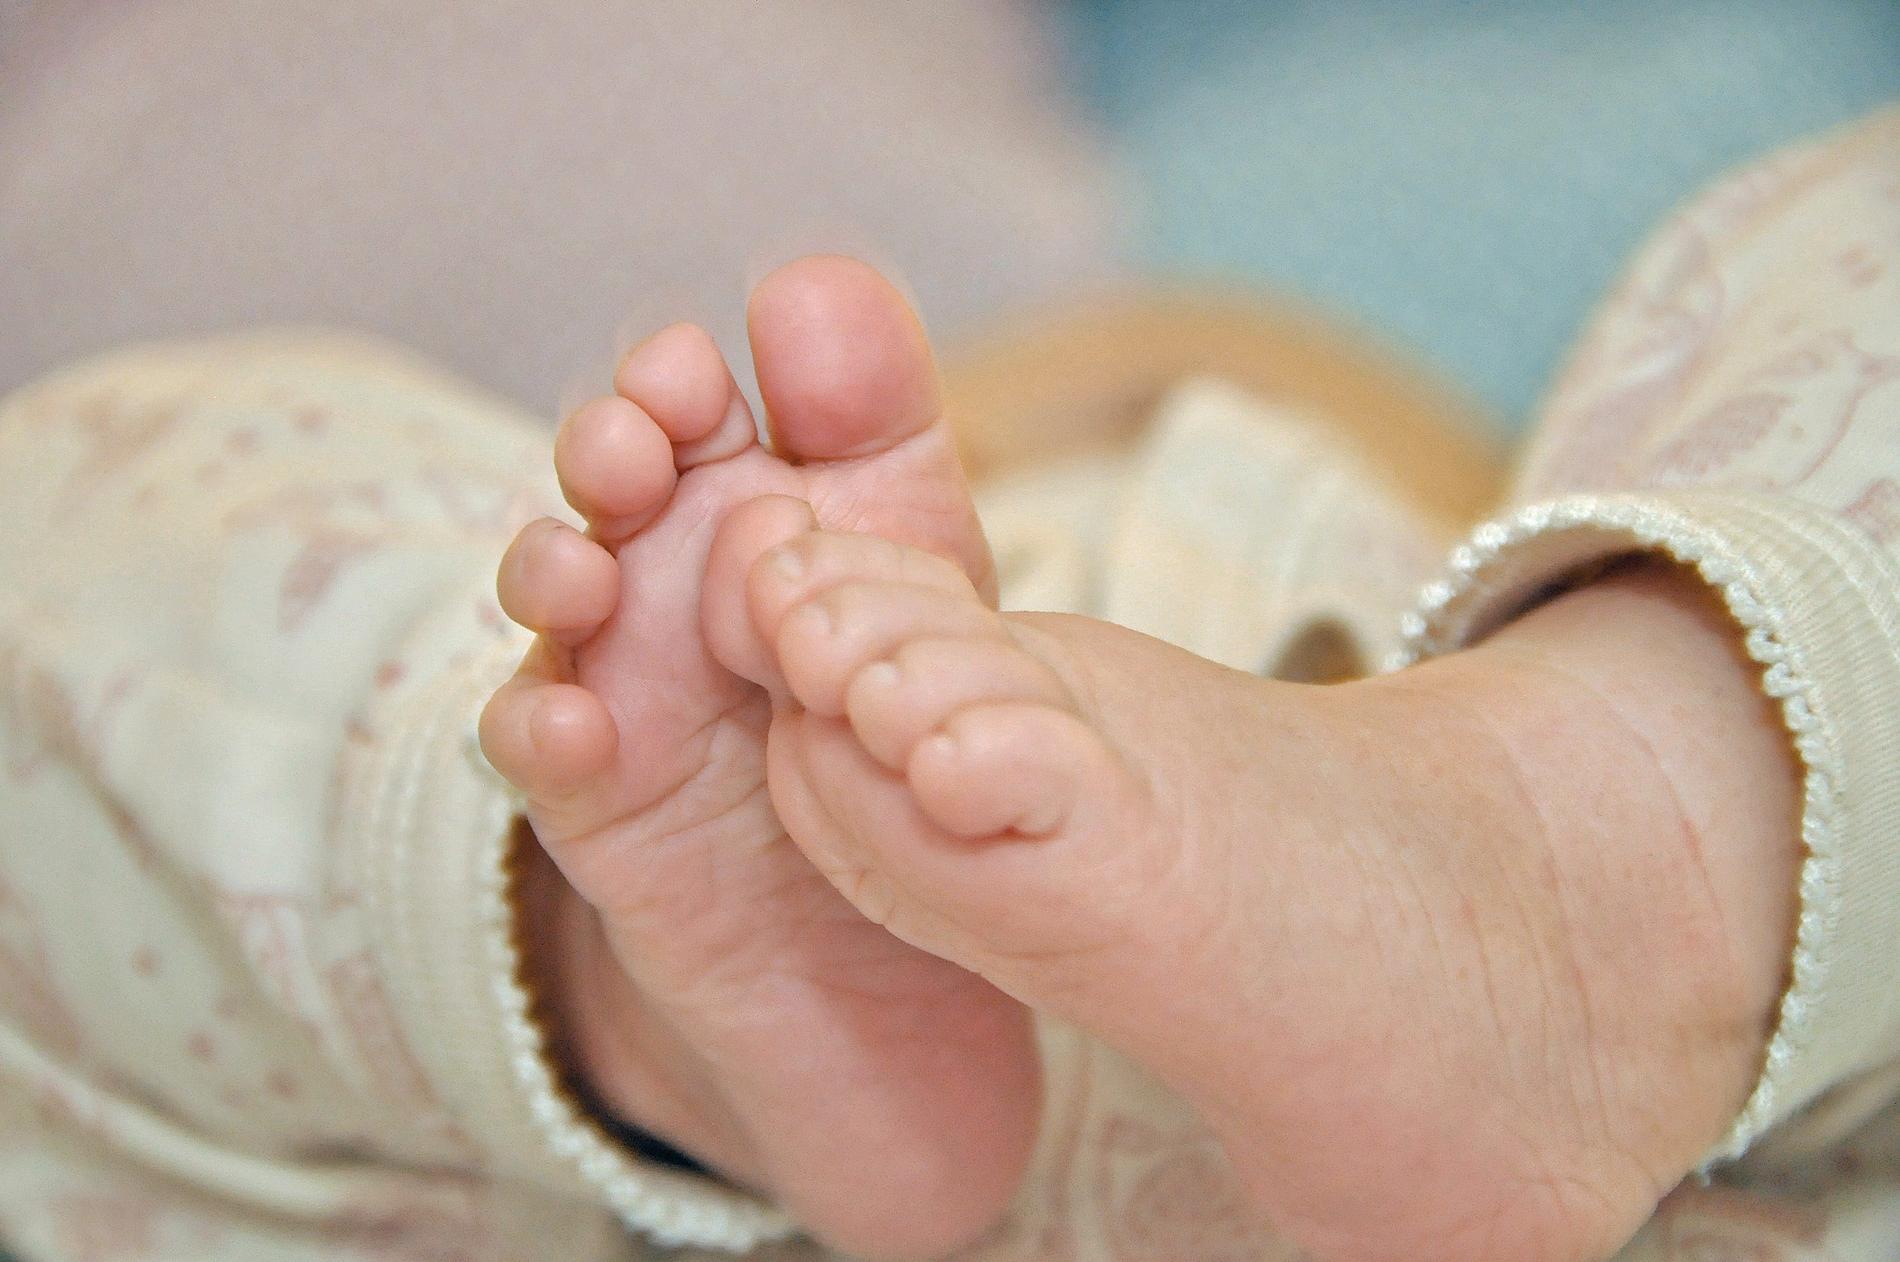 Spädbarn dog på Akademiska sjukhuset - föräldrarna blev hemskickade efter en timme. Arkivbild.